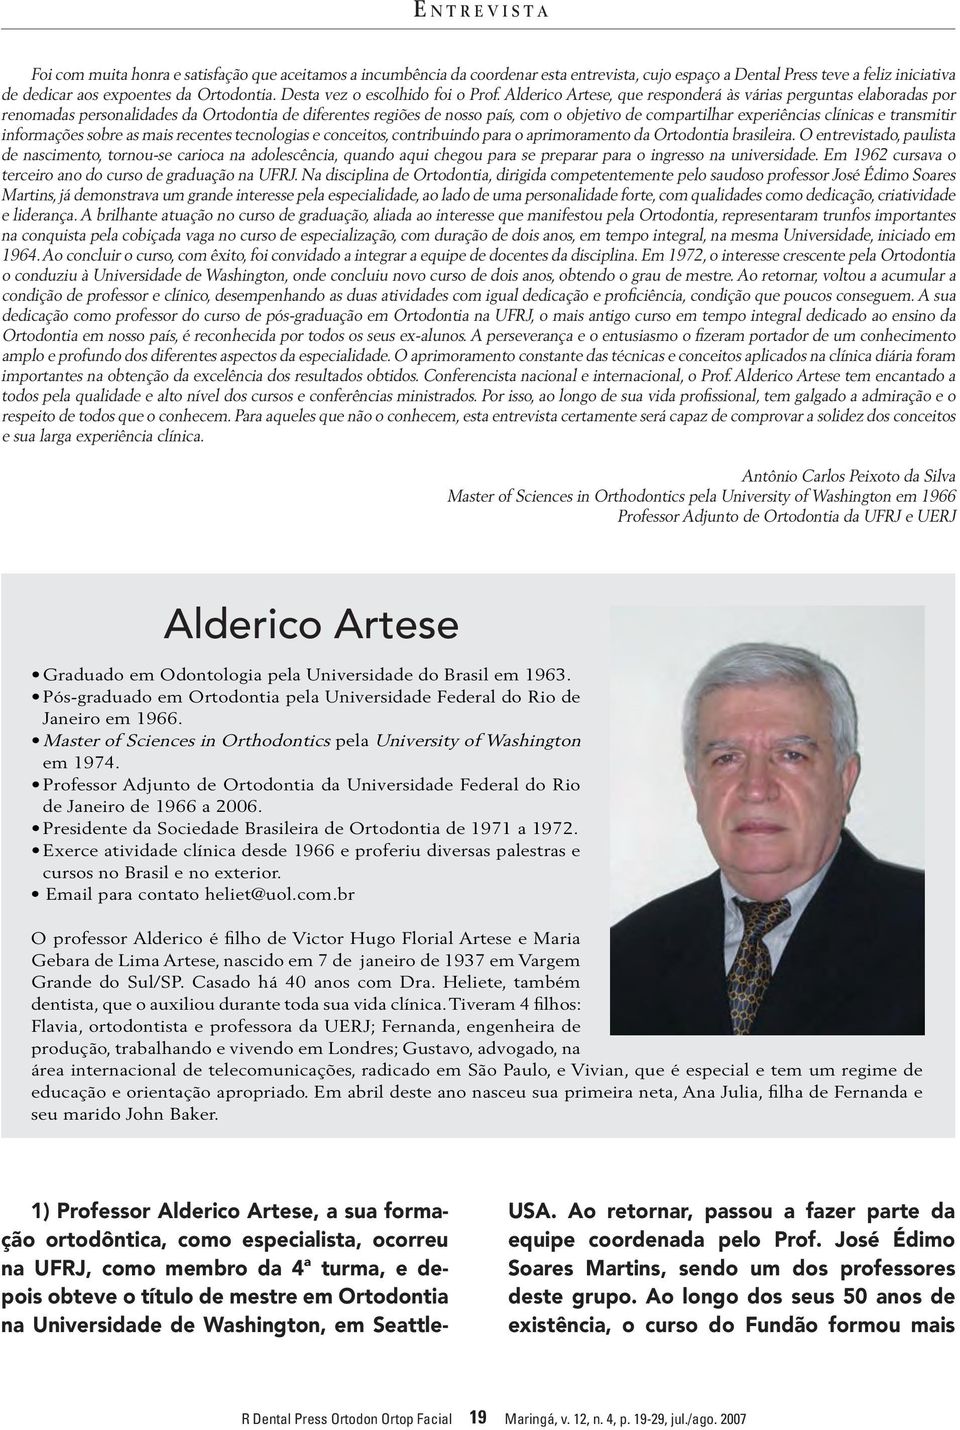 Alderico Artese, que responderá às várias perguntas elaboradas por renomadas personalidades da Ortodontia de diferentes regiões de nosso país, com o objetivo de compartilhar experiências clínicas e